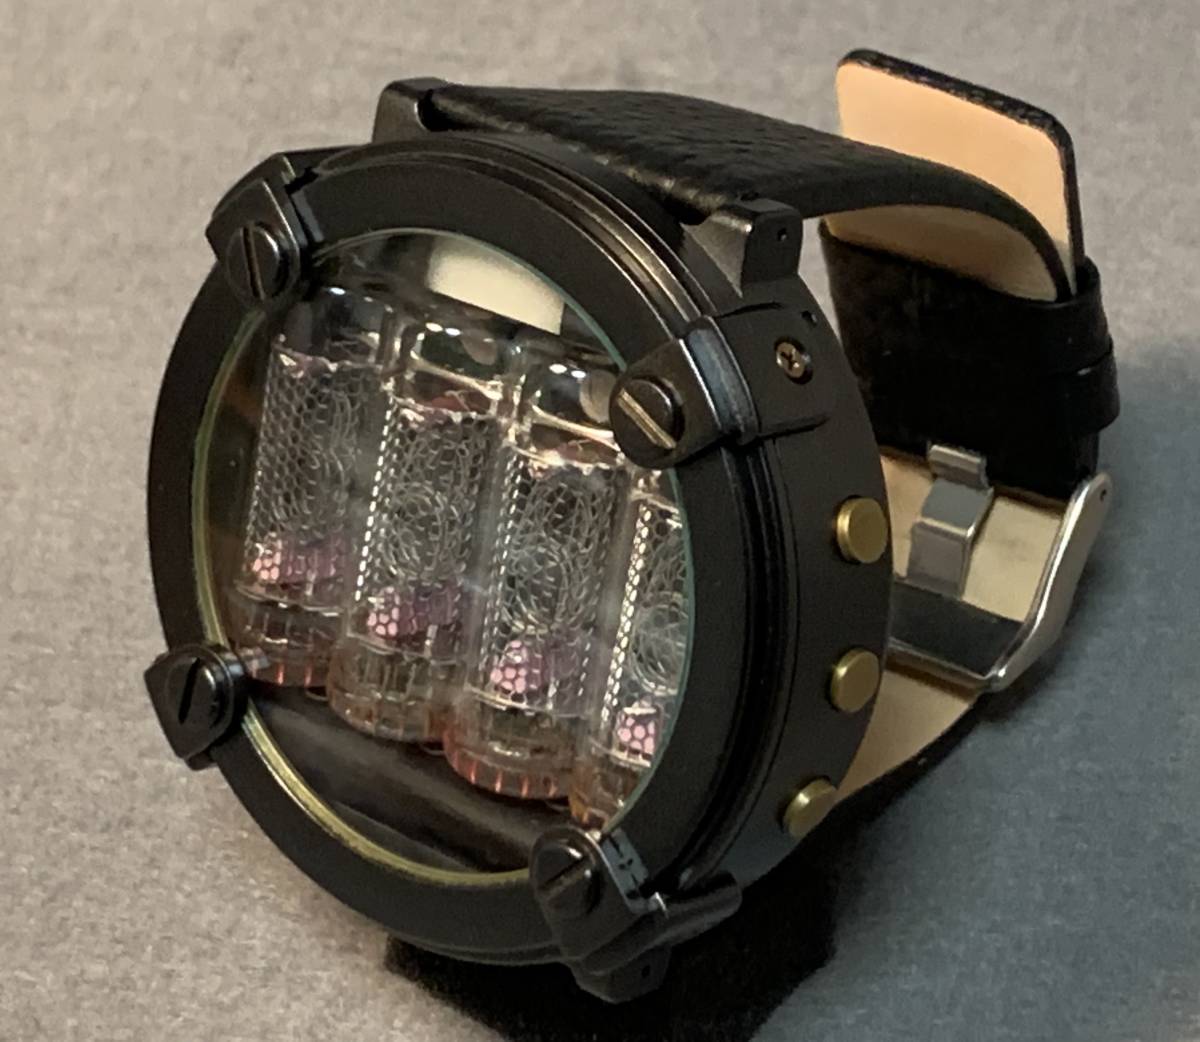 即決 ニキシー管 腕時計 IN-16 × 4管 メタリックブラック 時刻 日付 電池残量 温度 レザー 未使用 新品 ロシア 海外限定 日本未発売